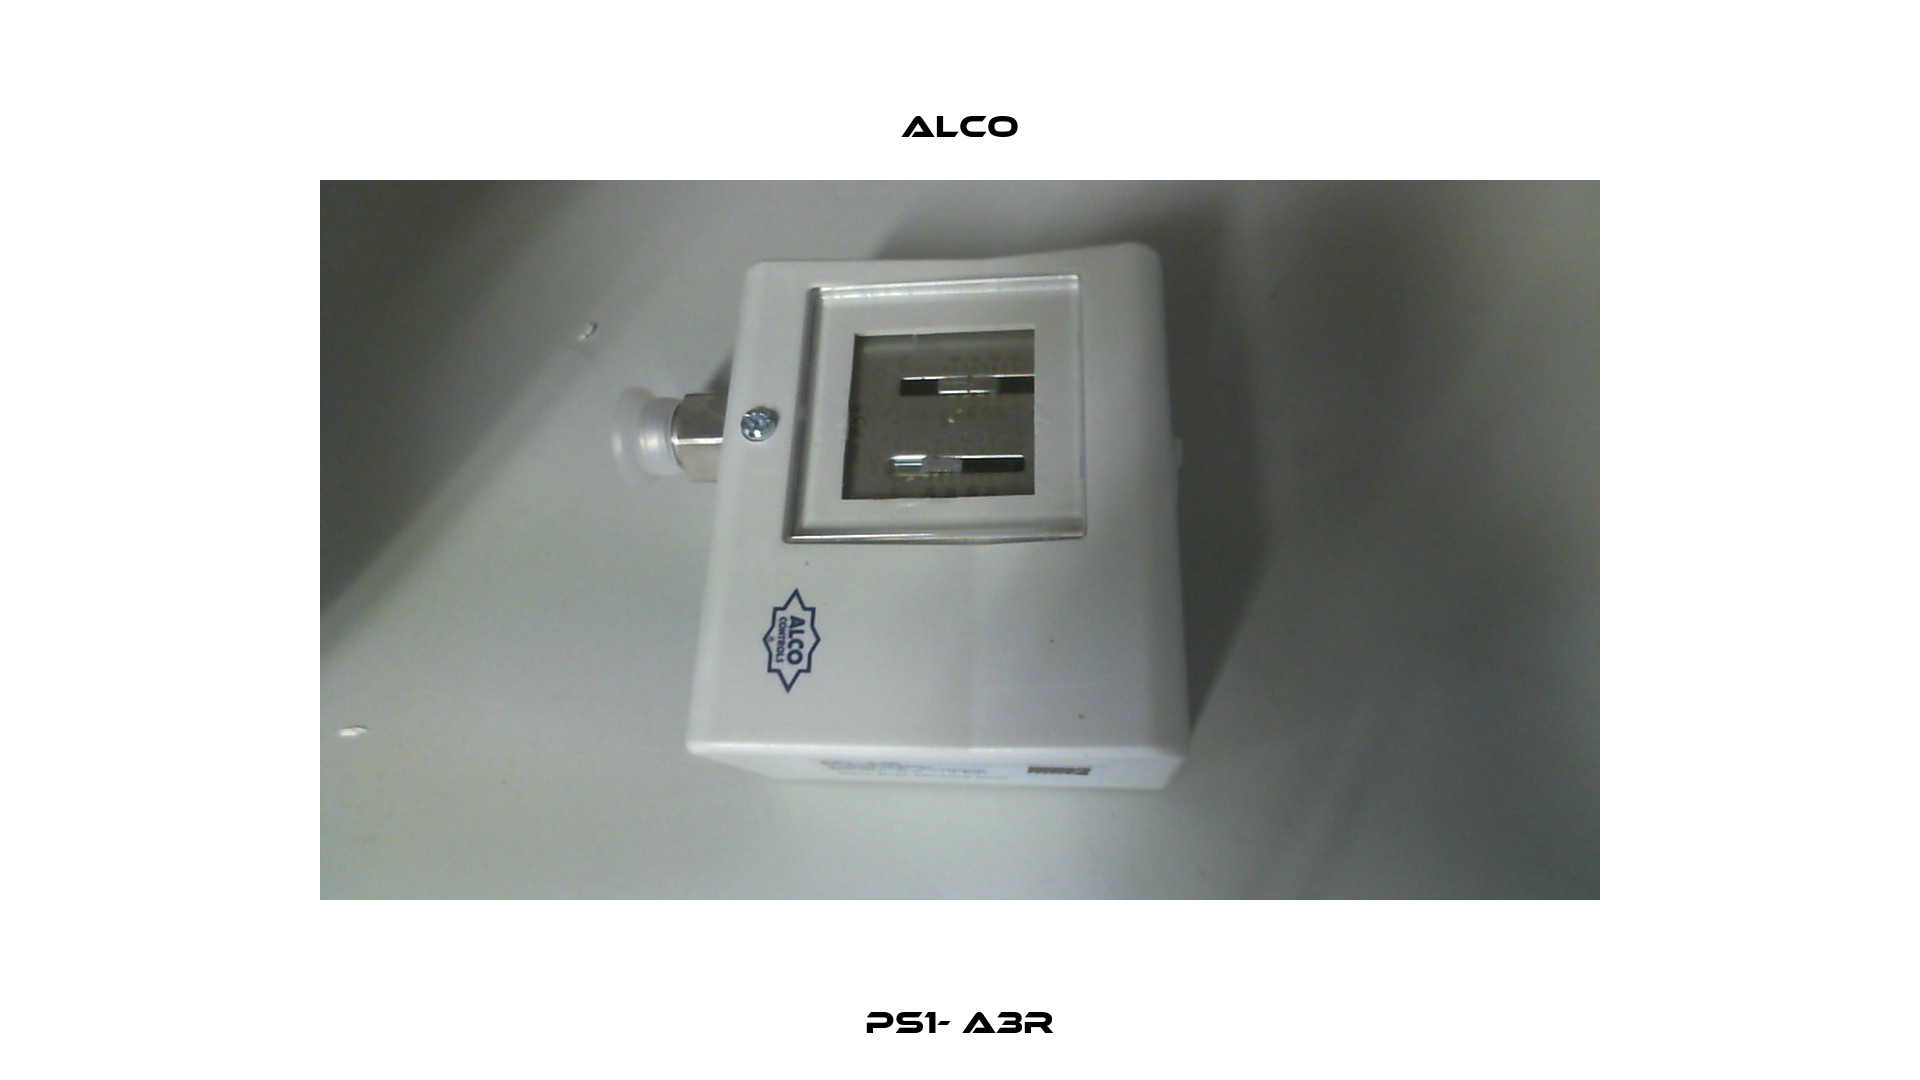 PS1- A3R Alco